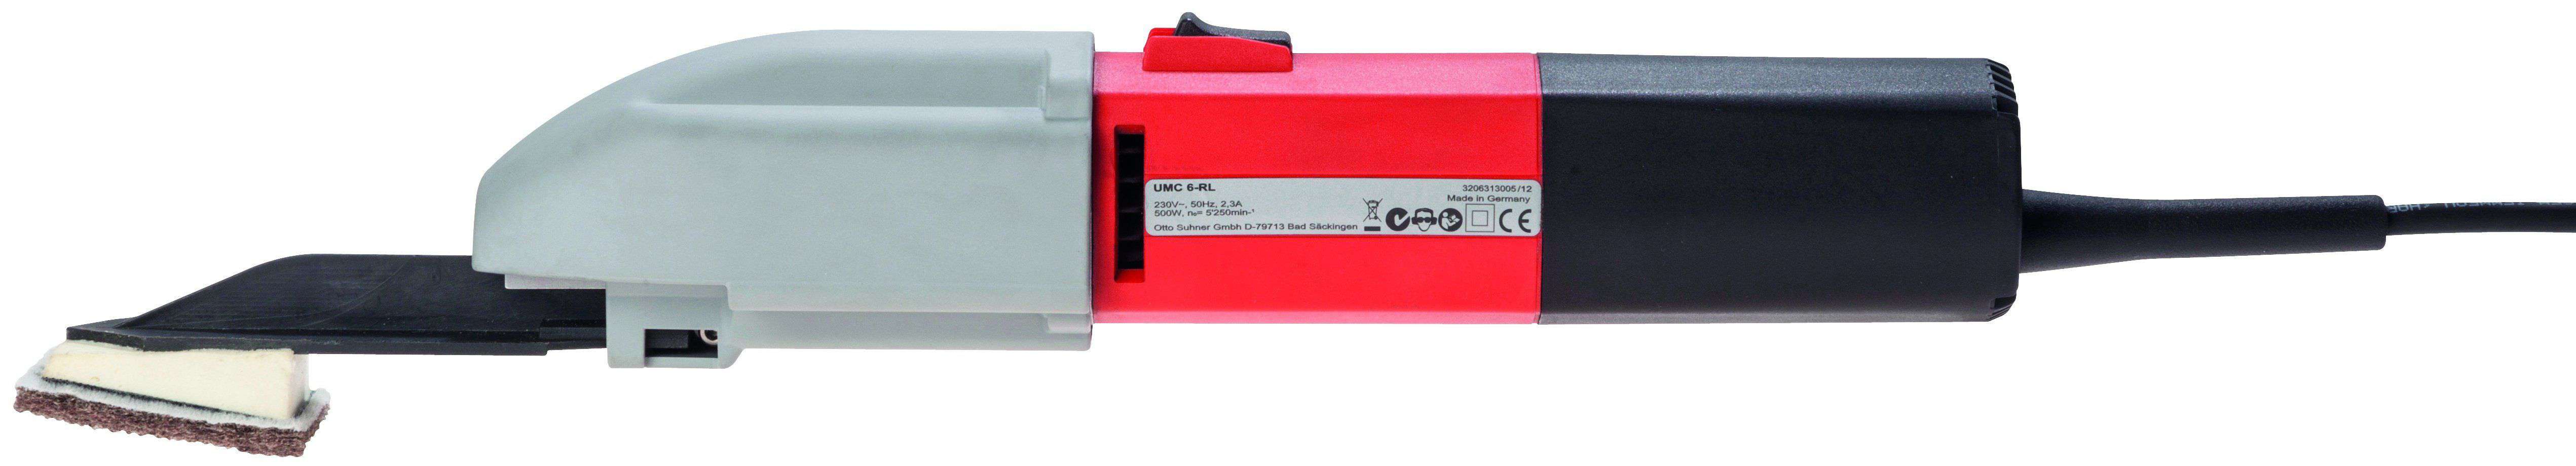 Suhner UMC 6-R Electric File, Starter Set- 120V